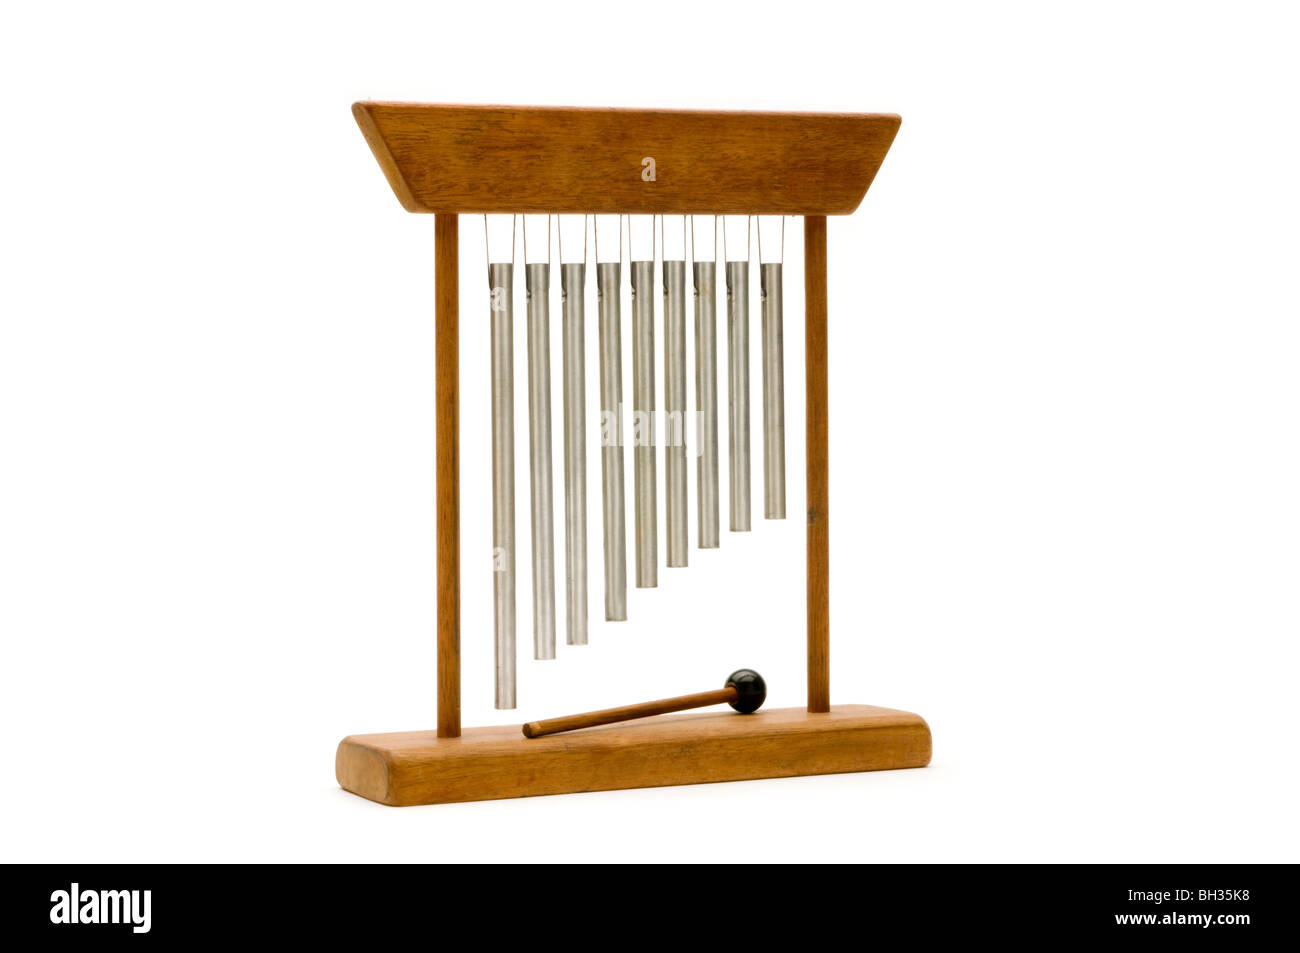 Carillon musical à vent ou carillon éolien, mobile à vent et gong